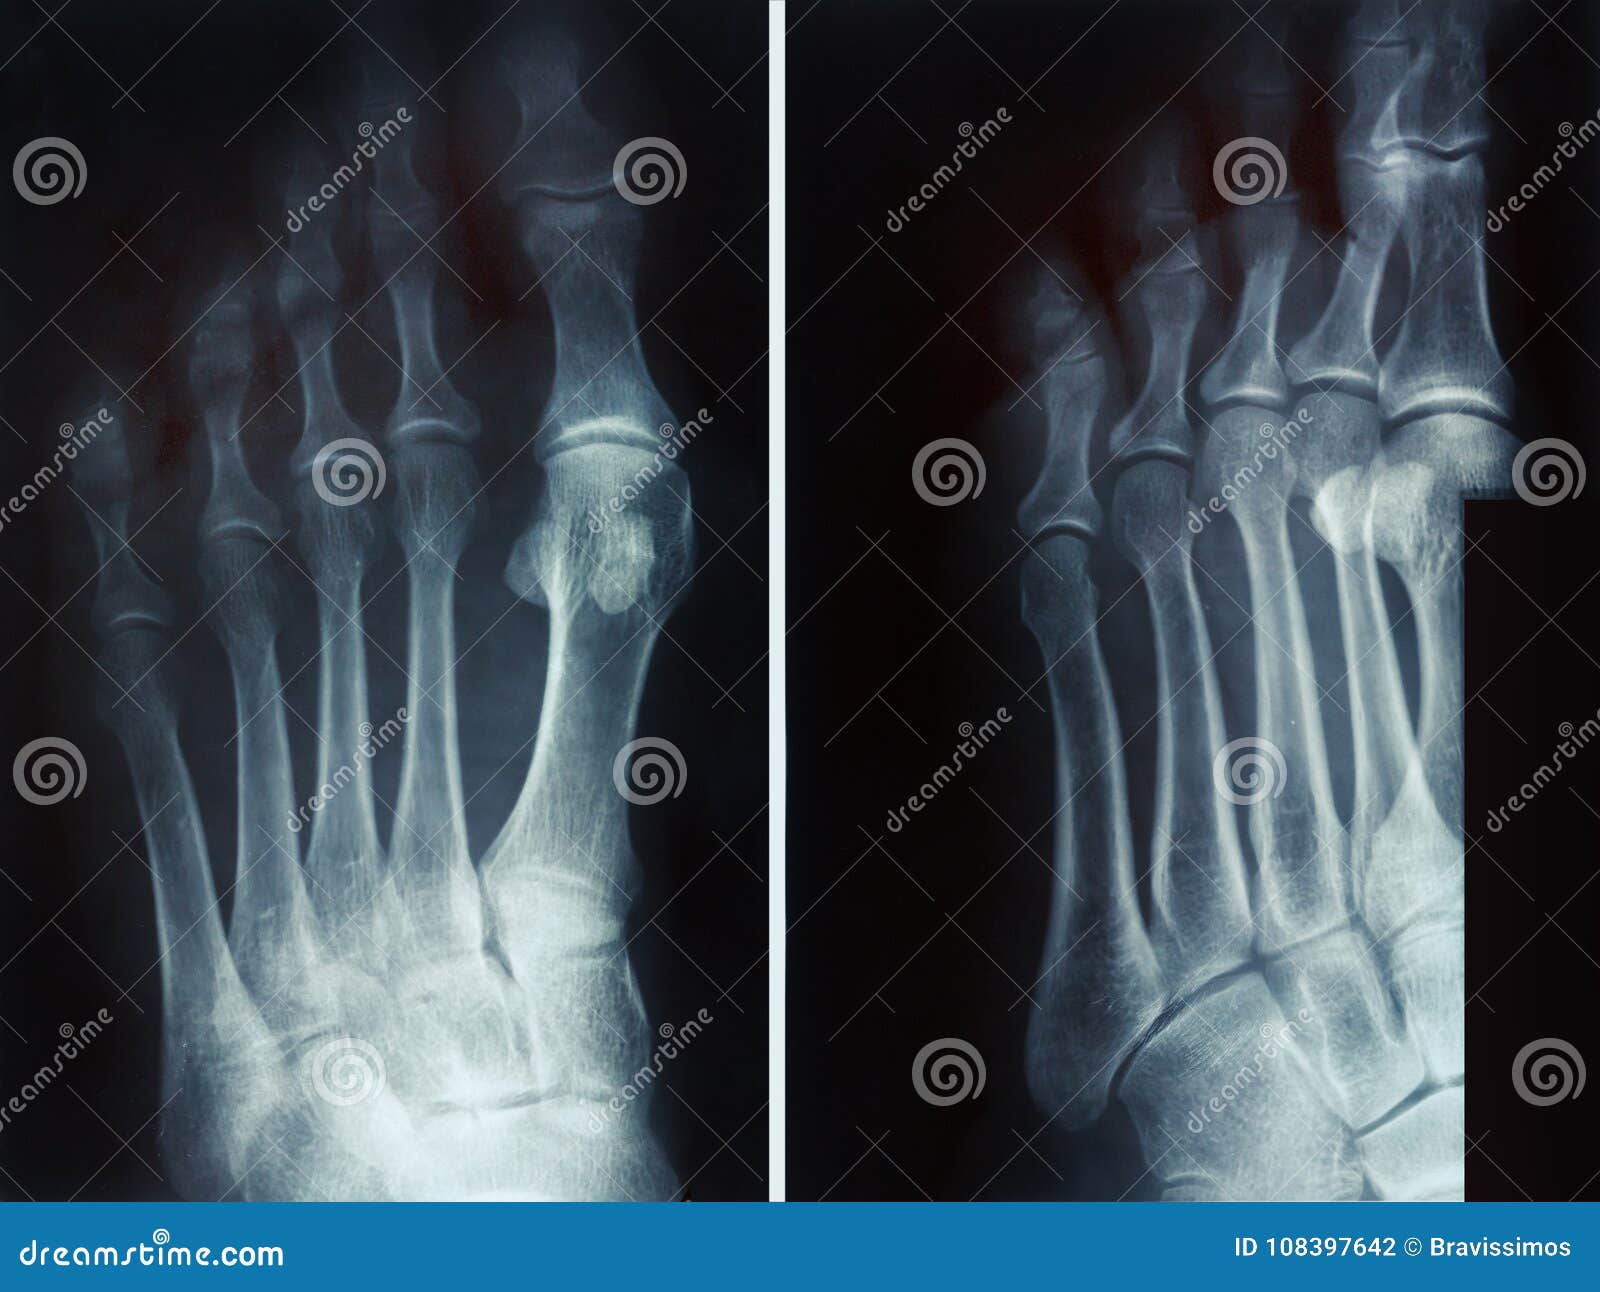 Перелом основания фаланги 1 пальца левой стопы рентген